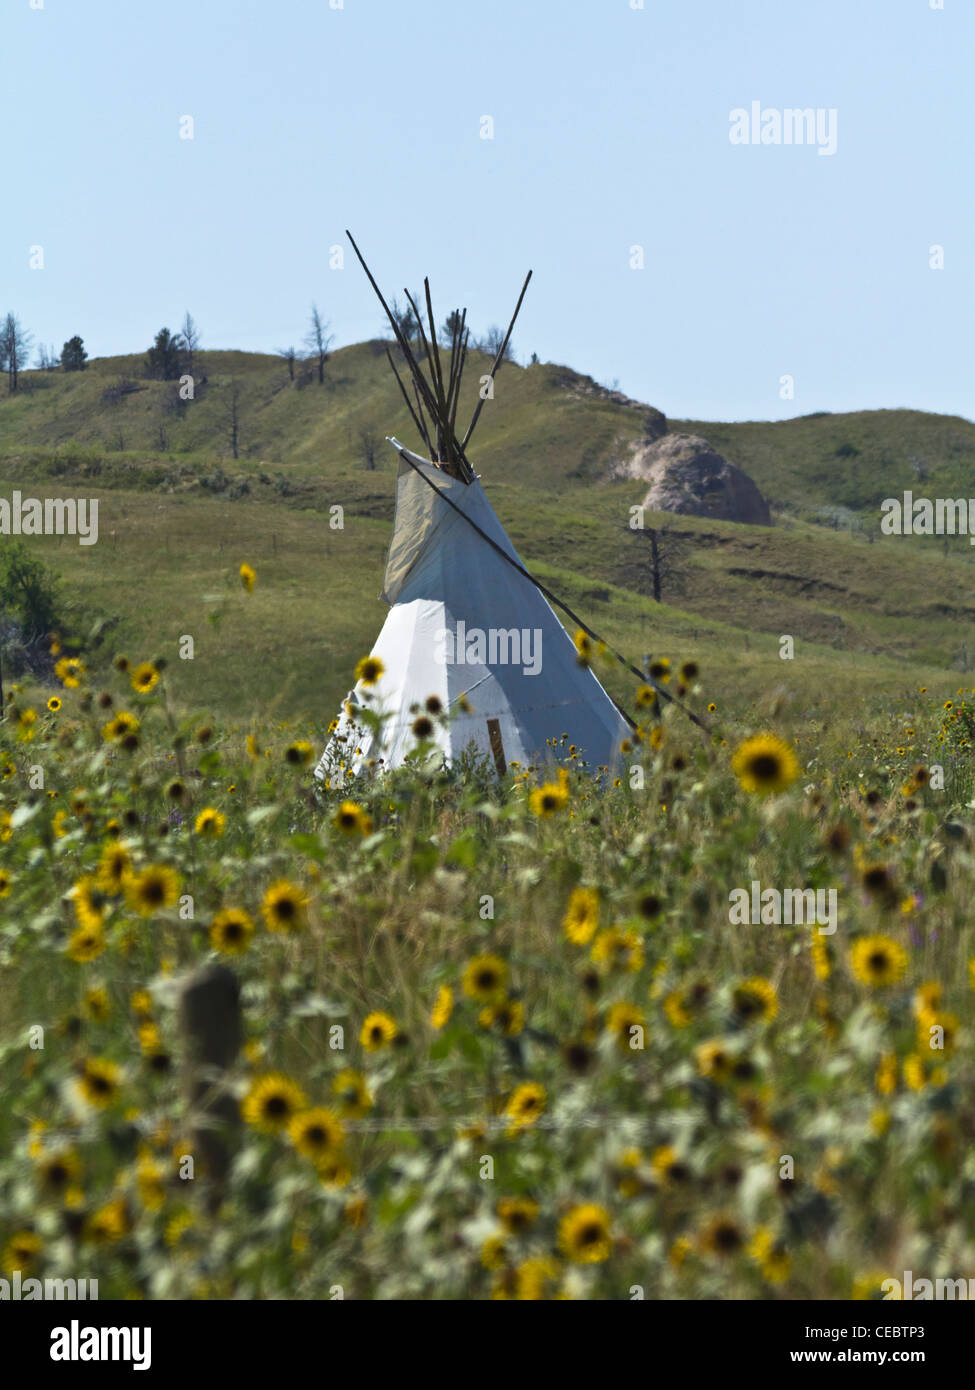 Amerikanische Prärie Lakota Oglala Stamm Sioux Pine Ridge South Dakota in den USA US Indianer Reservat ländliche Landschaft Land Niemand Fotos Hi-res Stockfoto